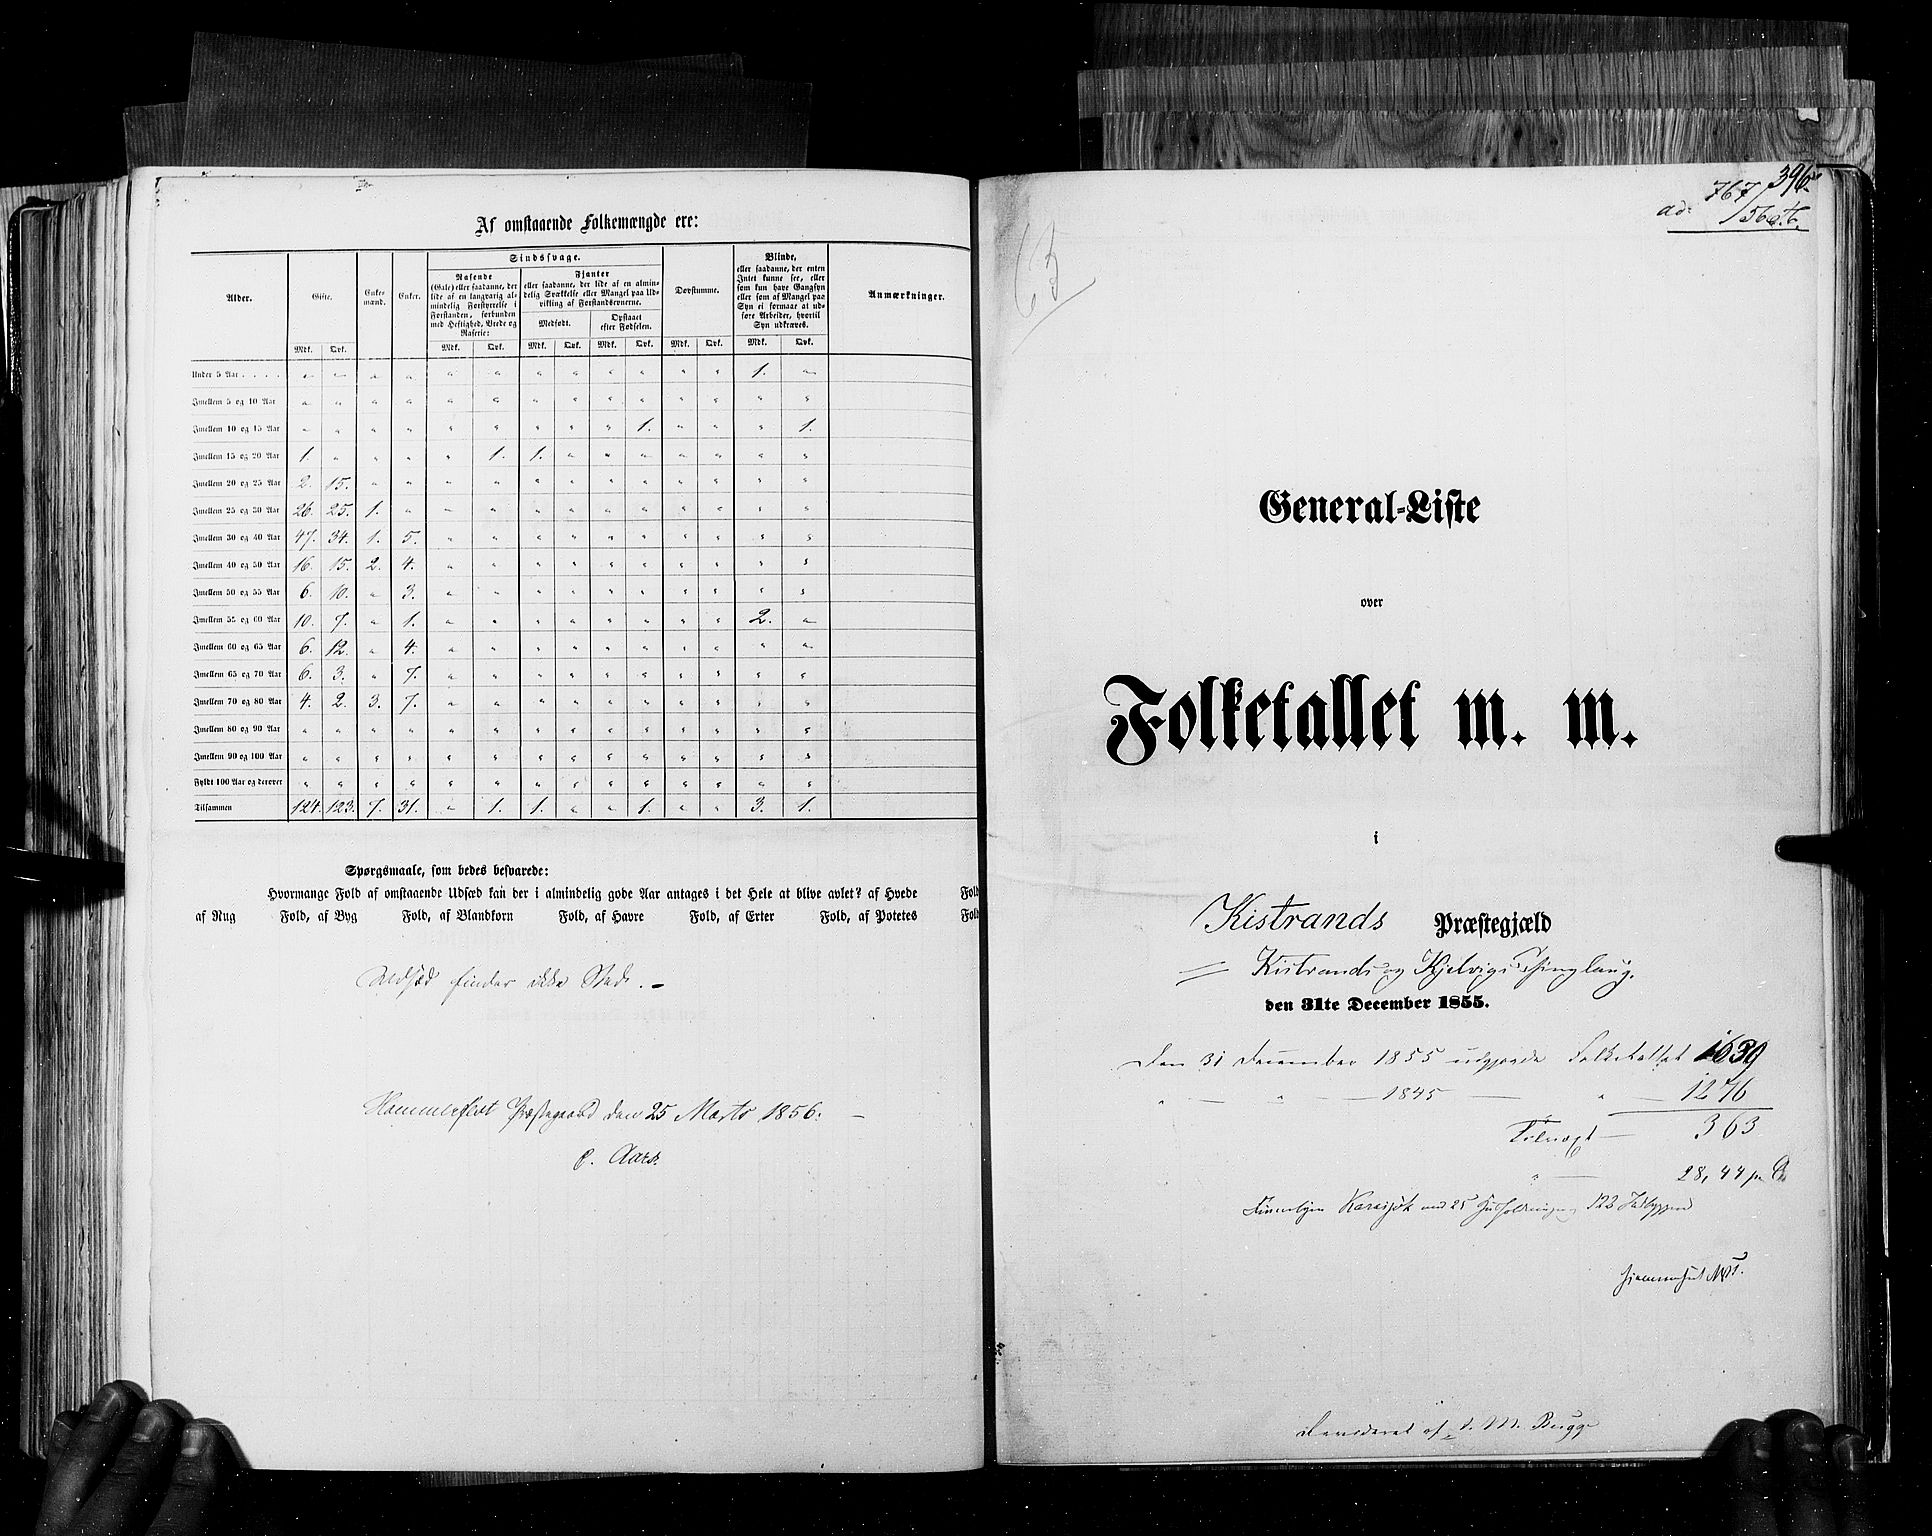 RA, Folketellingen 1855, bind 6B: Nordland amt og Finnmarken amt, 1855, s. 396